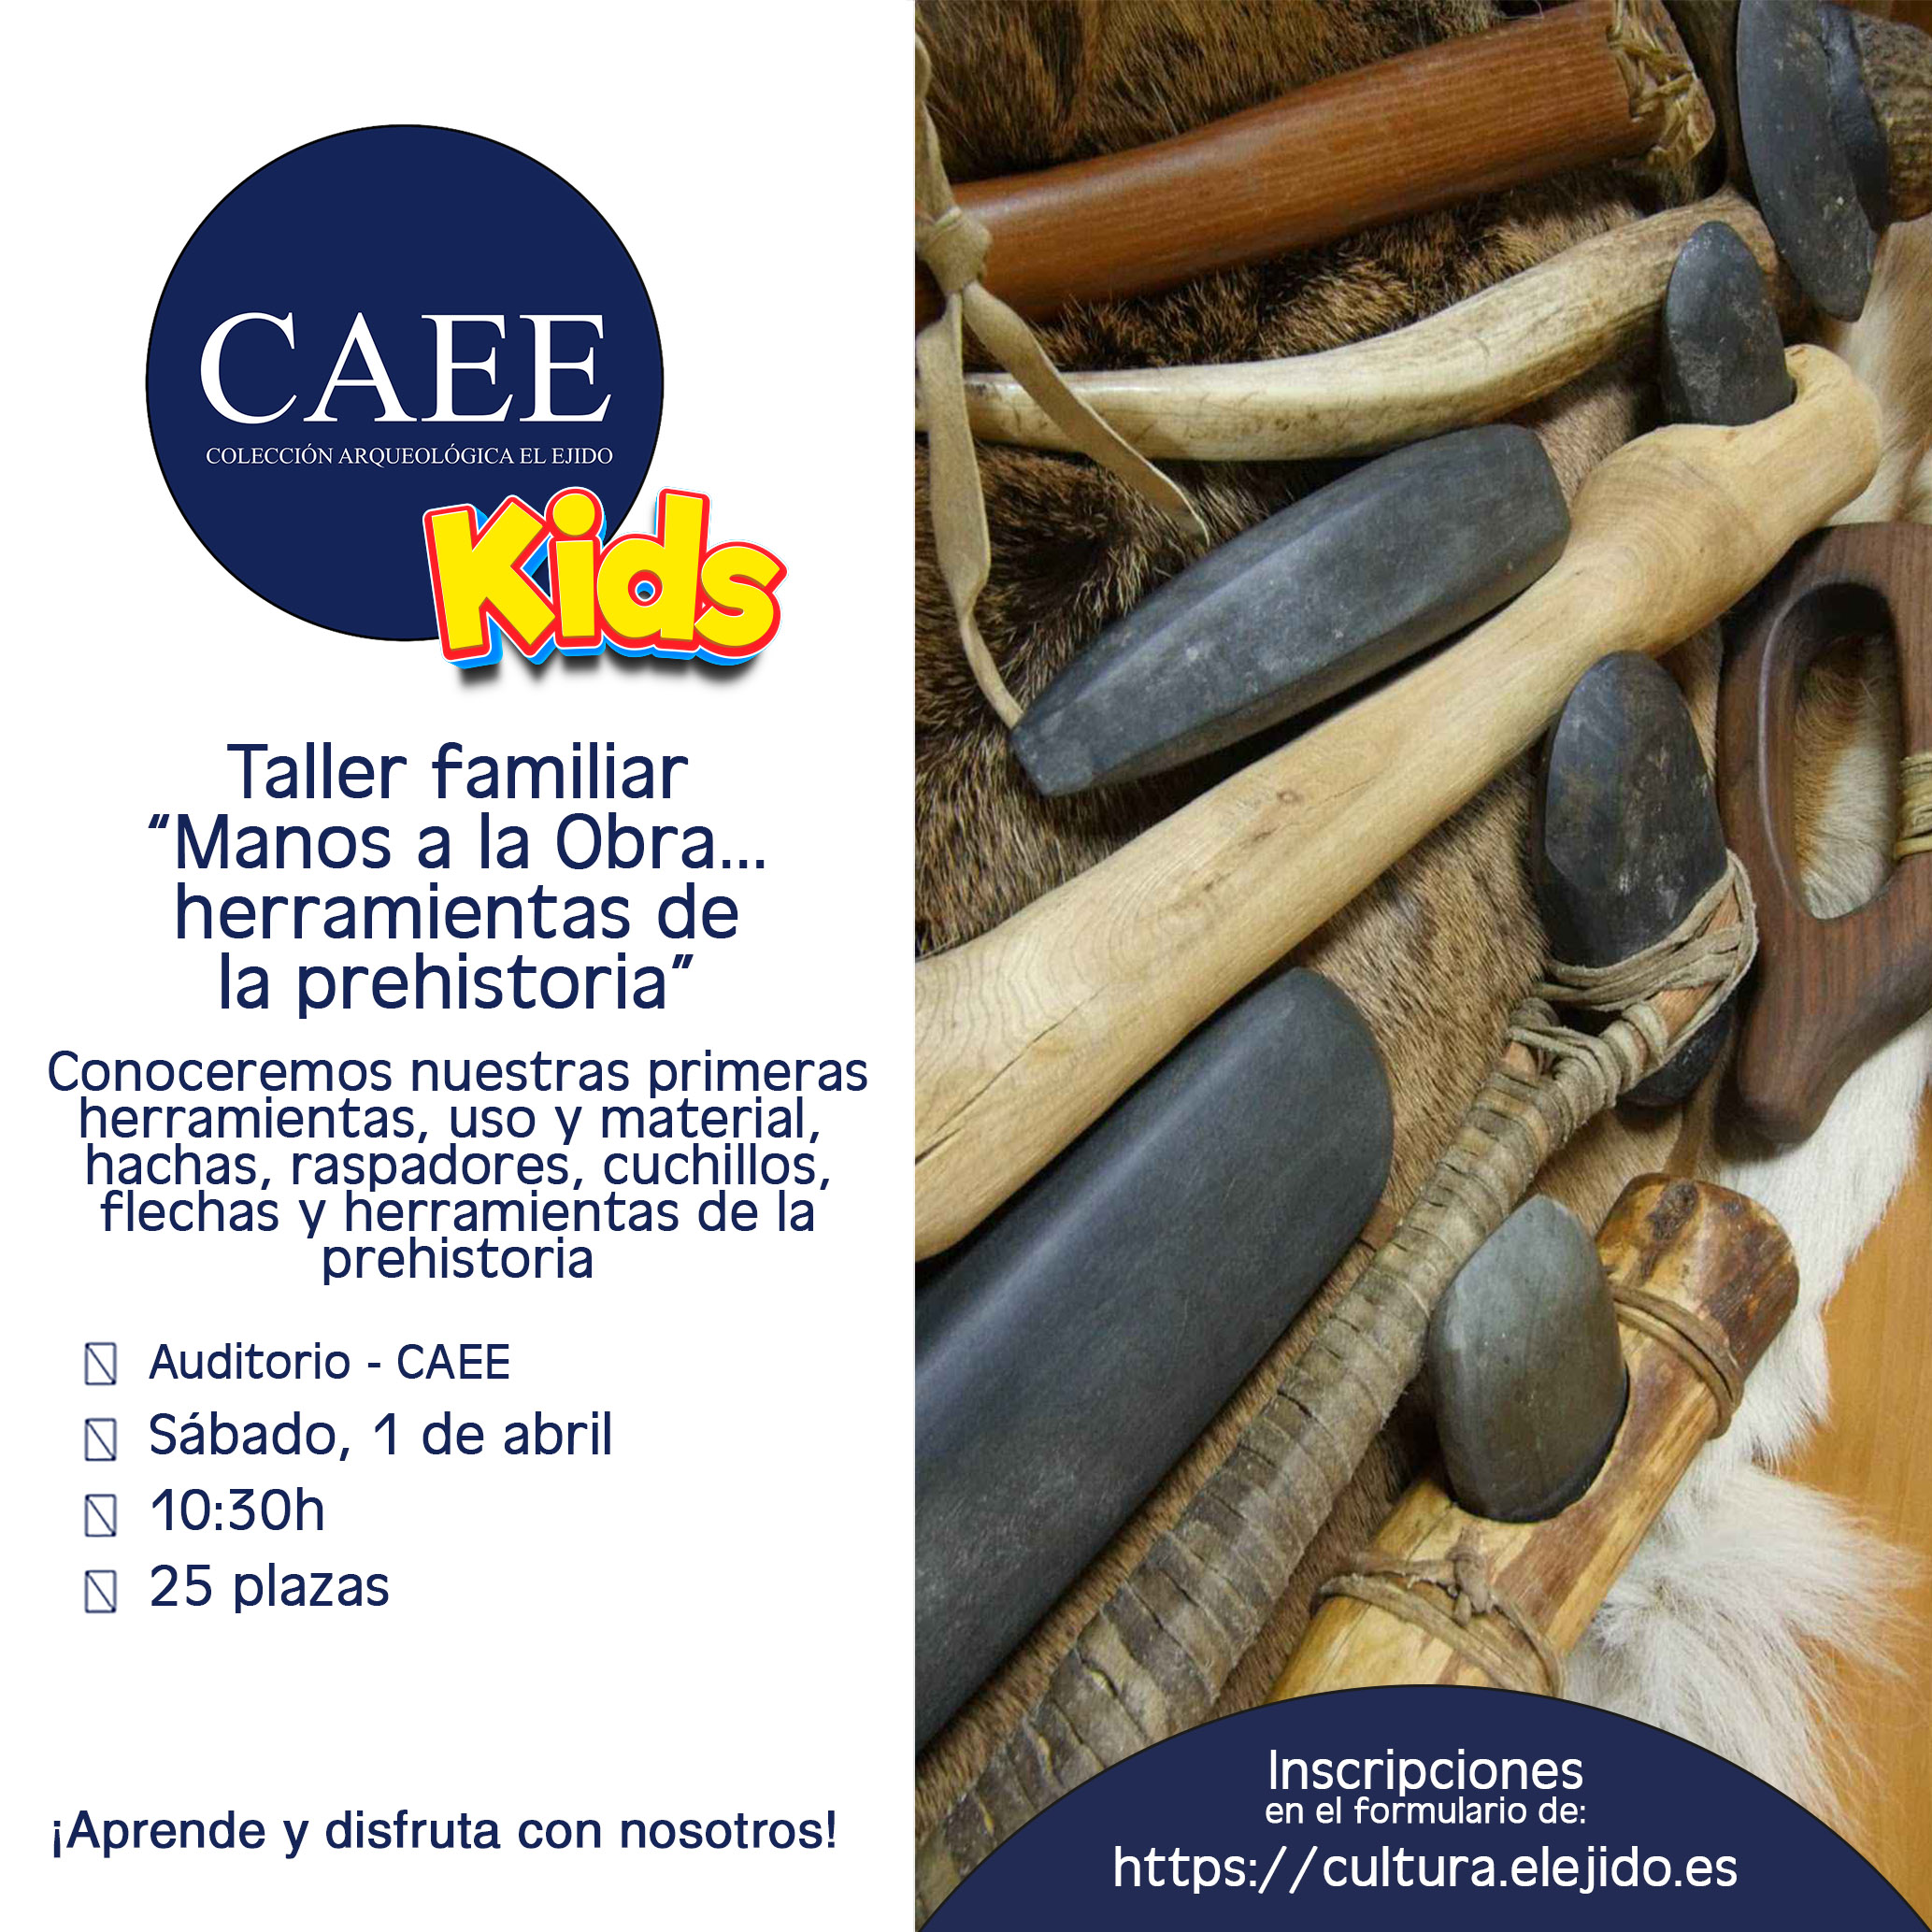 CAEE kids´23 – Taller familiar «Manos a la obra… herramientas de la prehistoria» – Sábado 1 de abril